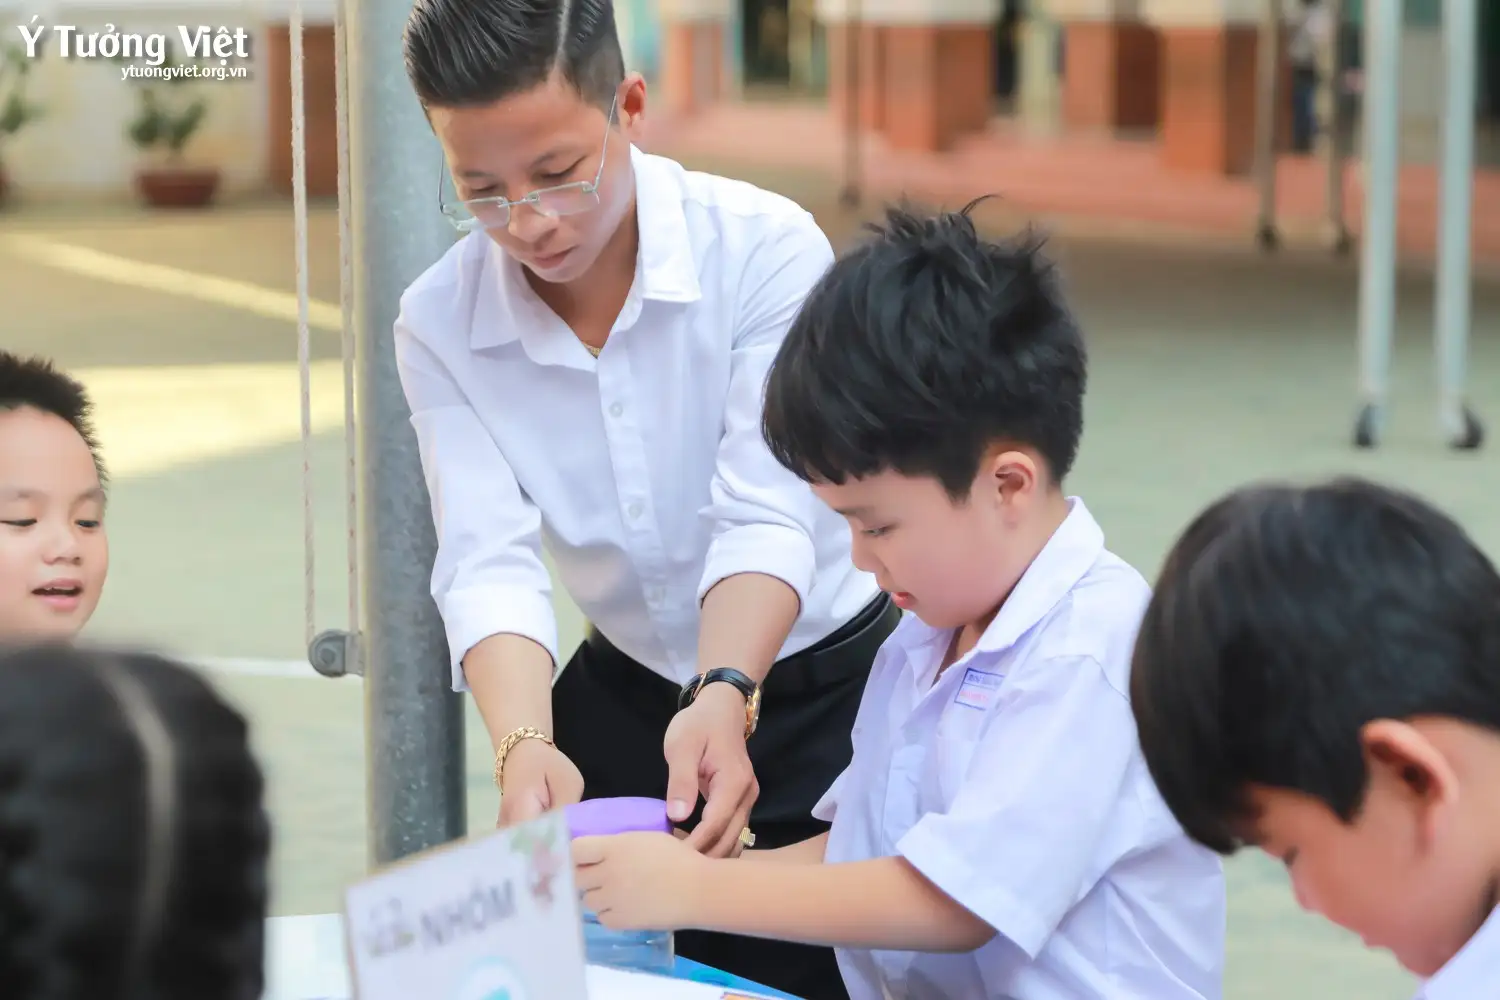 Ngày hội “Ba mẹ đồng hành cùng con” ở trường TH An Phong | Chuyên đề: Lớp học mở STEM – Thiết kế kèn cổ vũ